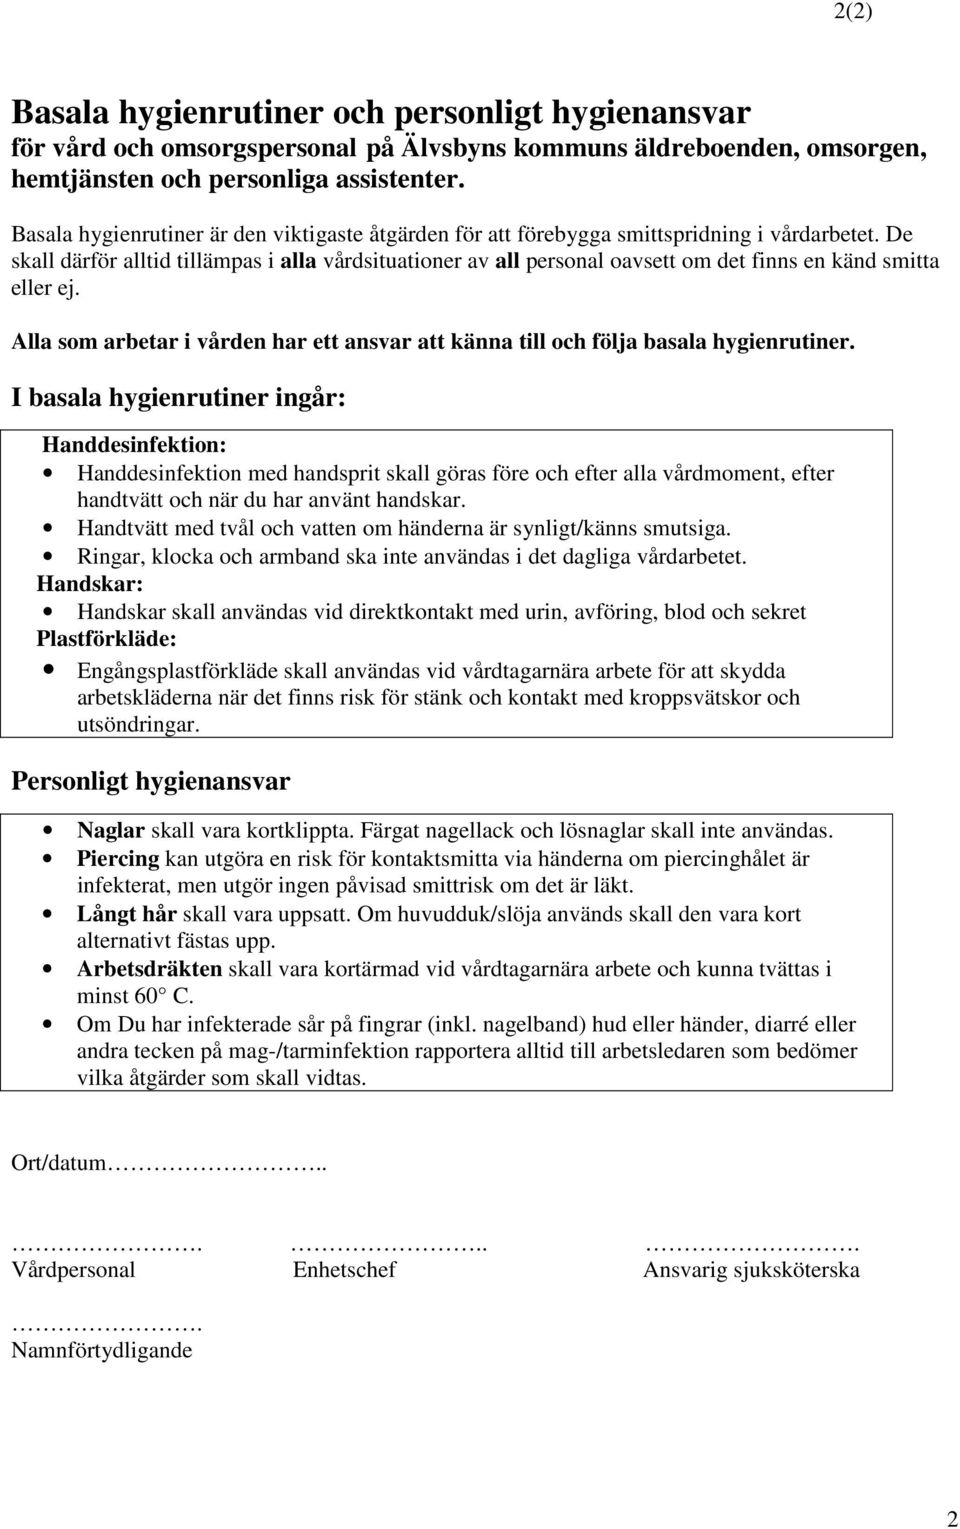 Handledning självskattning av basala hygienrutiner på Älvsbyns kommuns  äldreboende, omsorgen, hemtjänst och personliga assistenter - PDF Gratis  nedladdning